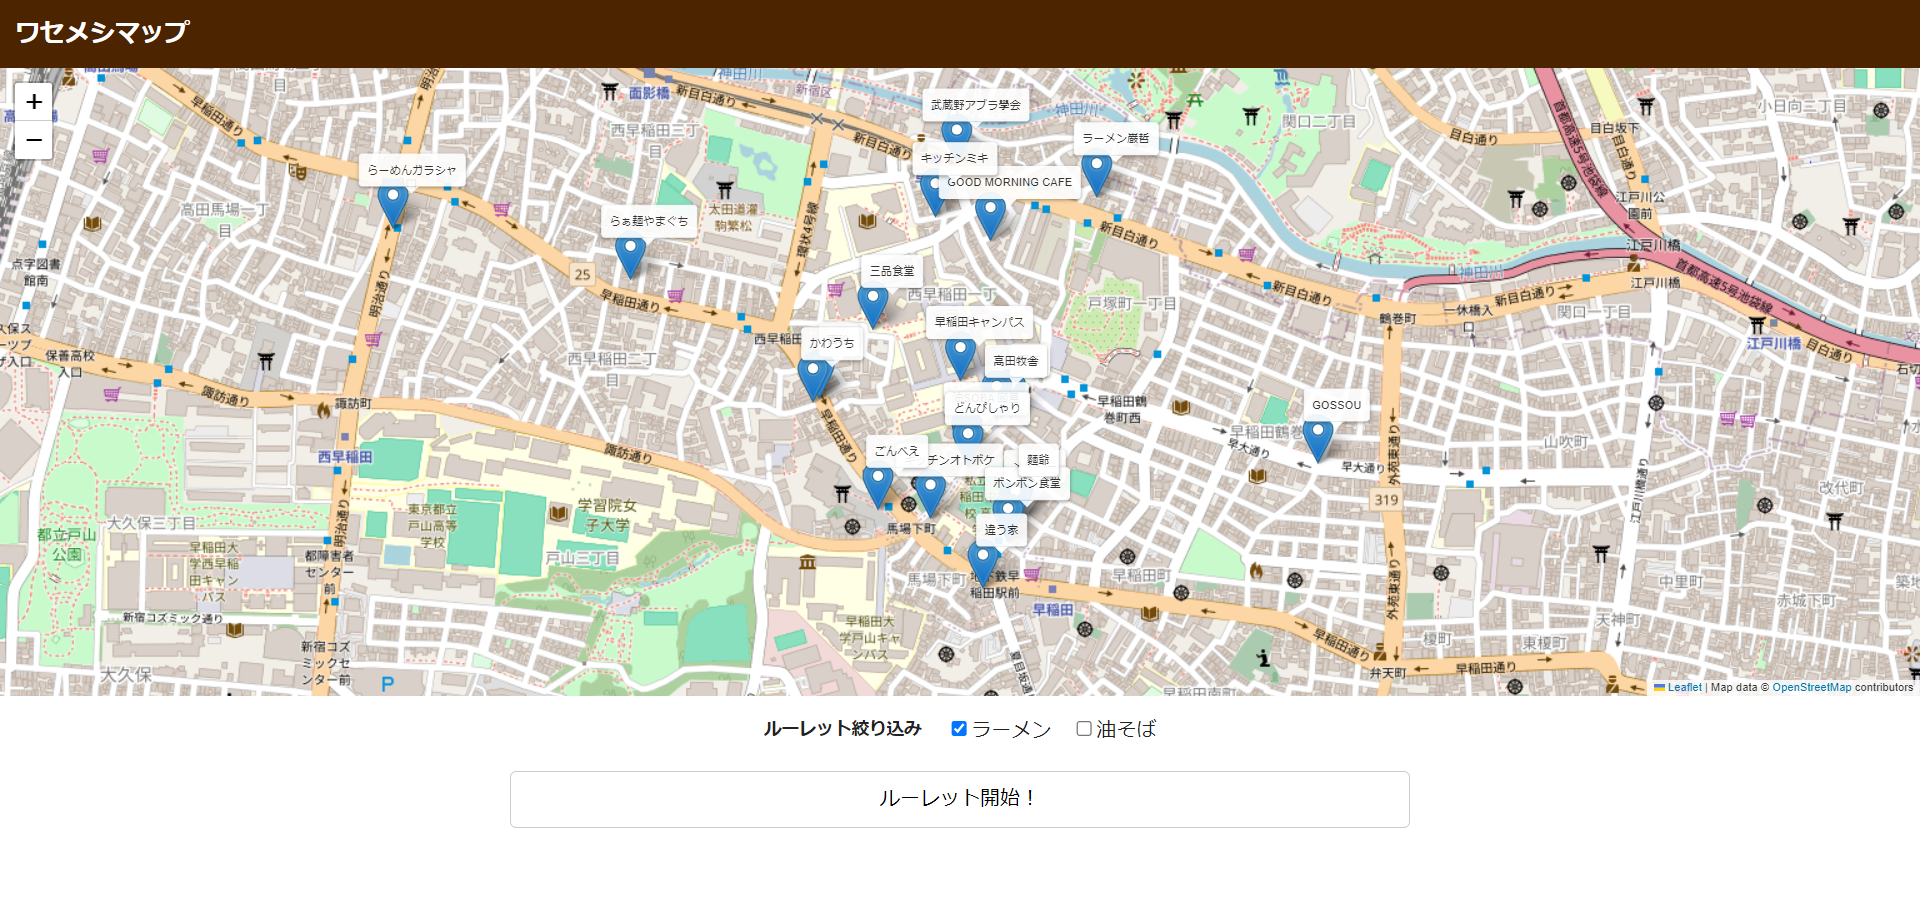 AstroとLeafletを用いた地図アプリ『ワセメシマップ』を作った話